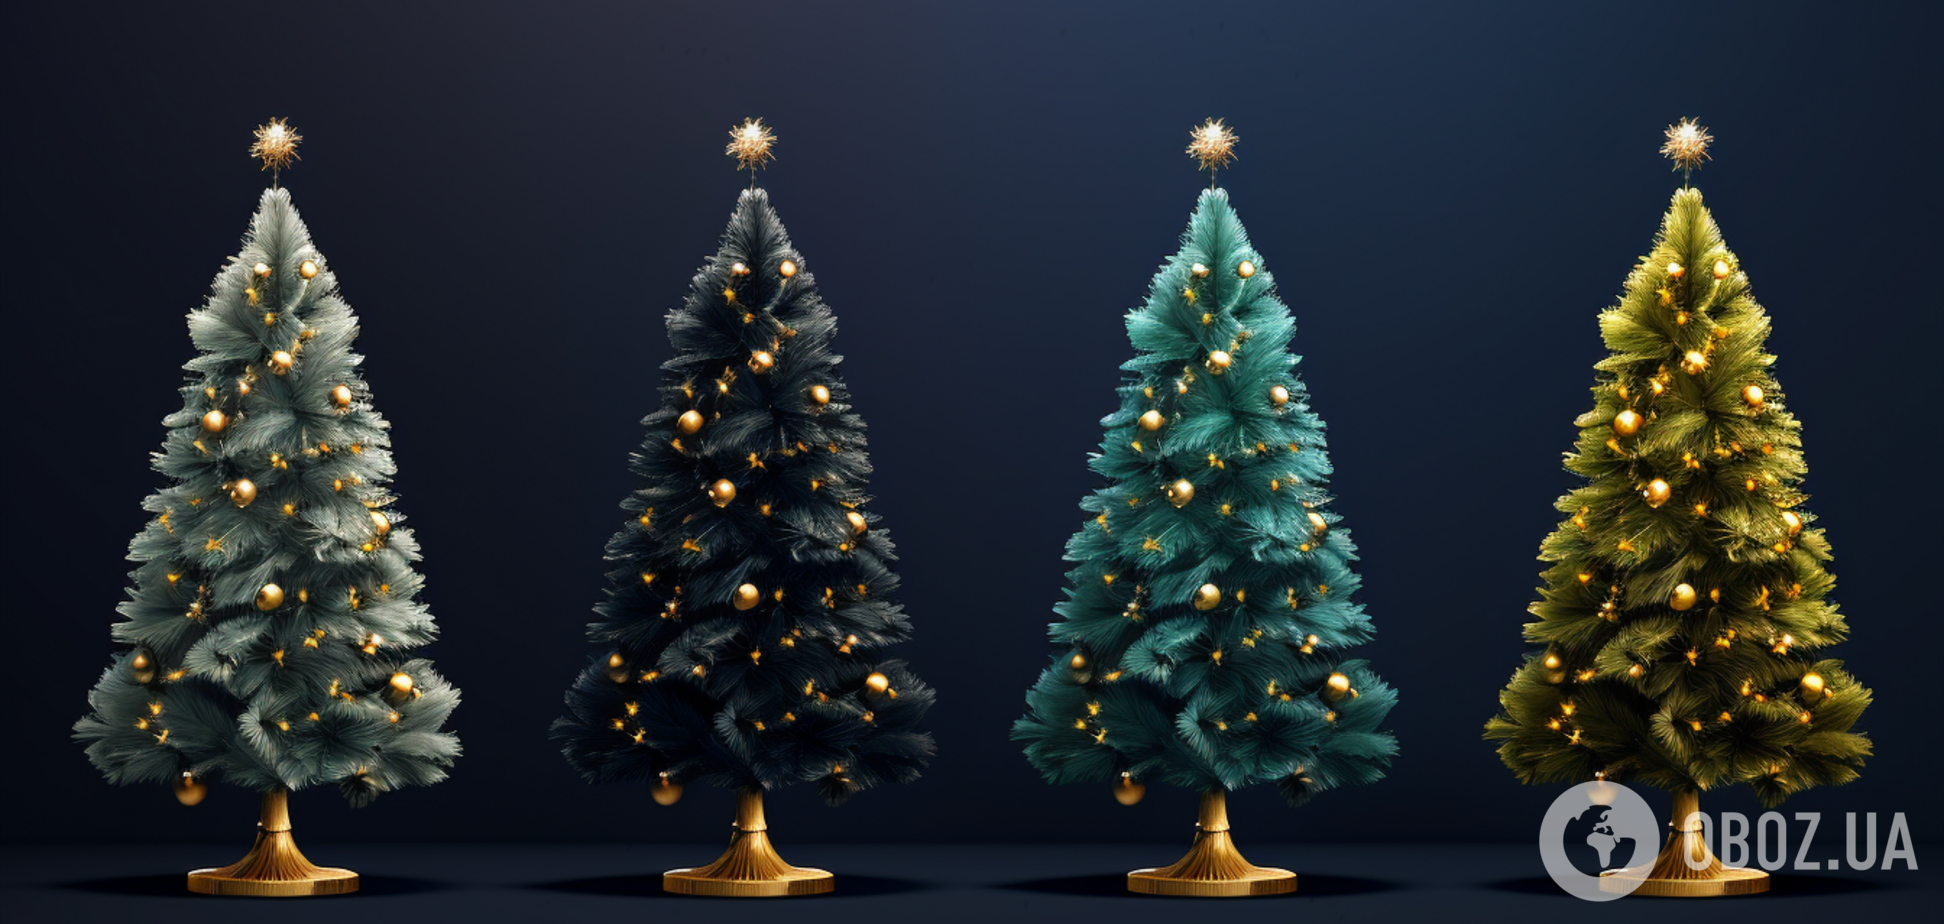 Как ершики для унитаза спасли популярную в мире традицию на Рождество и Новый год